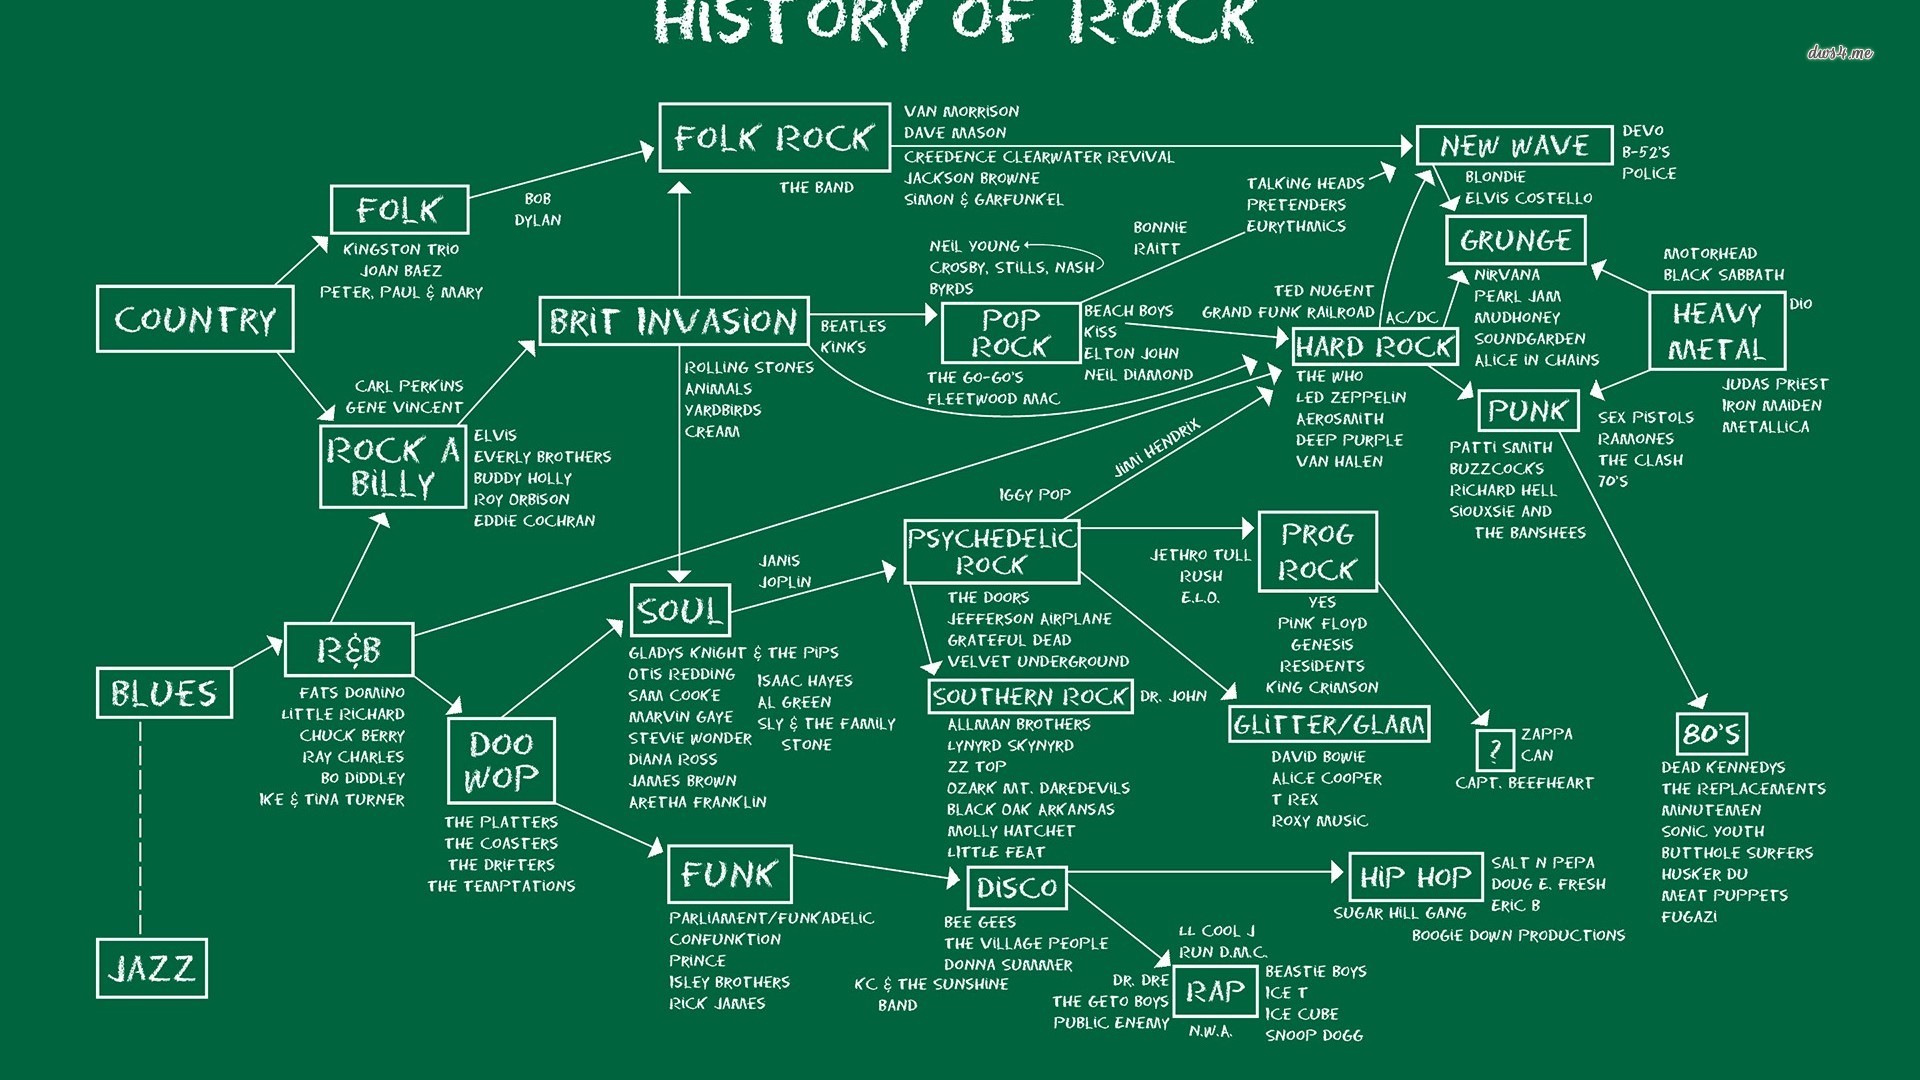 History Of Rock School Of Rock - HD Wallpaper 